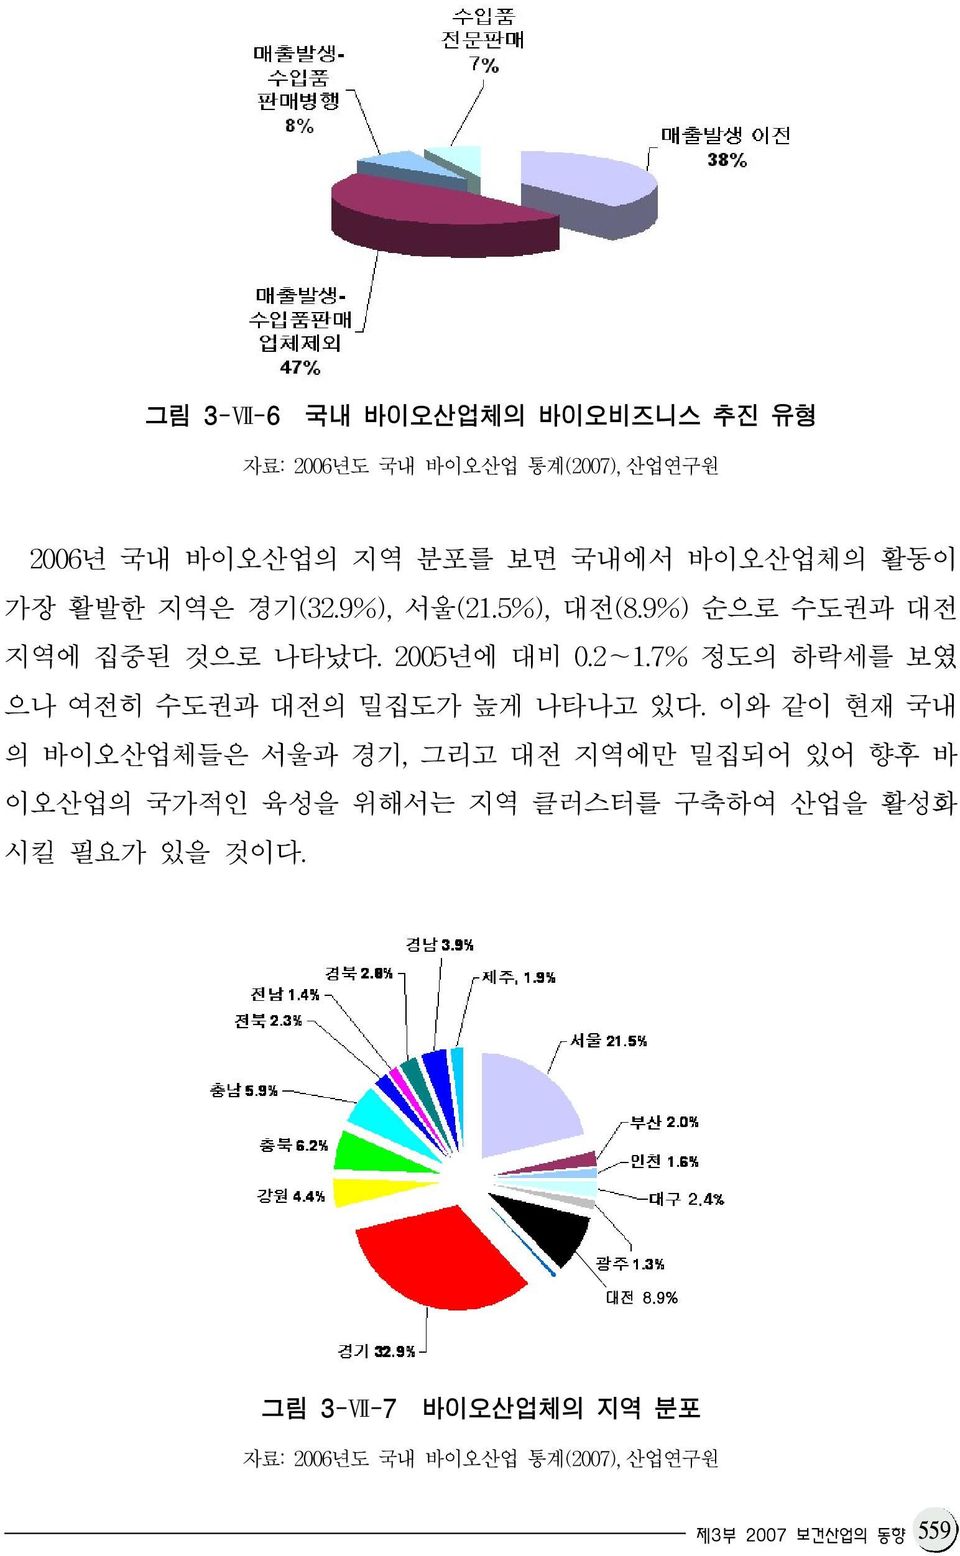 7% 정도의 하락세를 보였 으나 여전히 수도권과 대전의 밀집도가 높게 나타나고 있다.